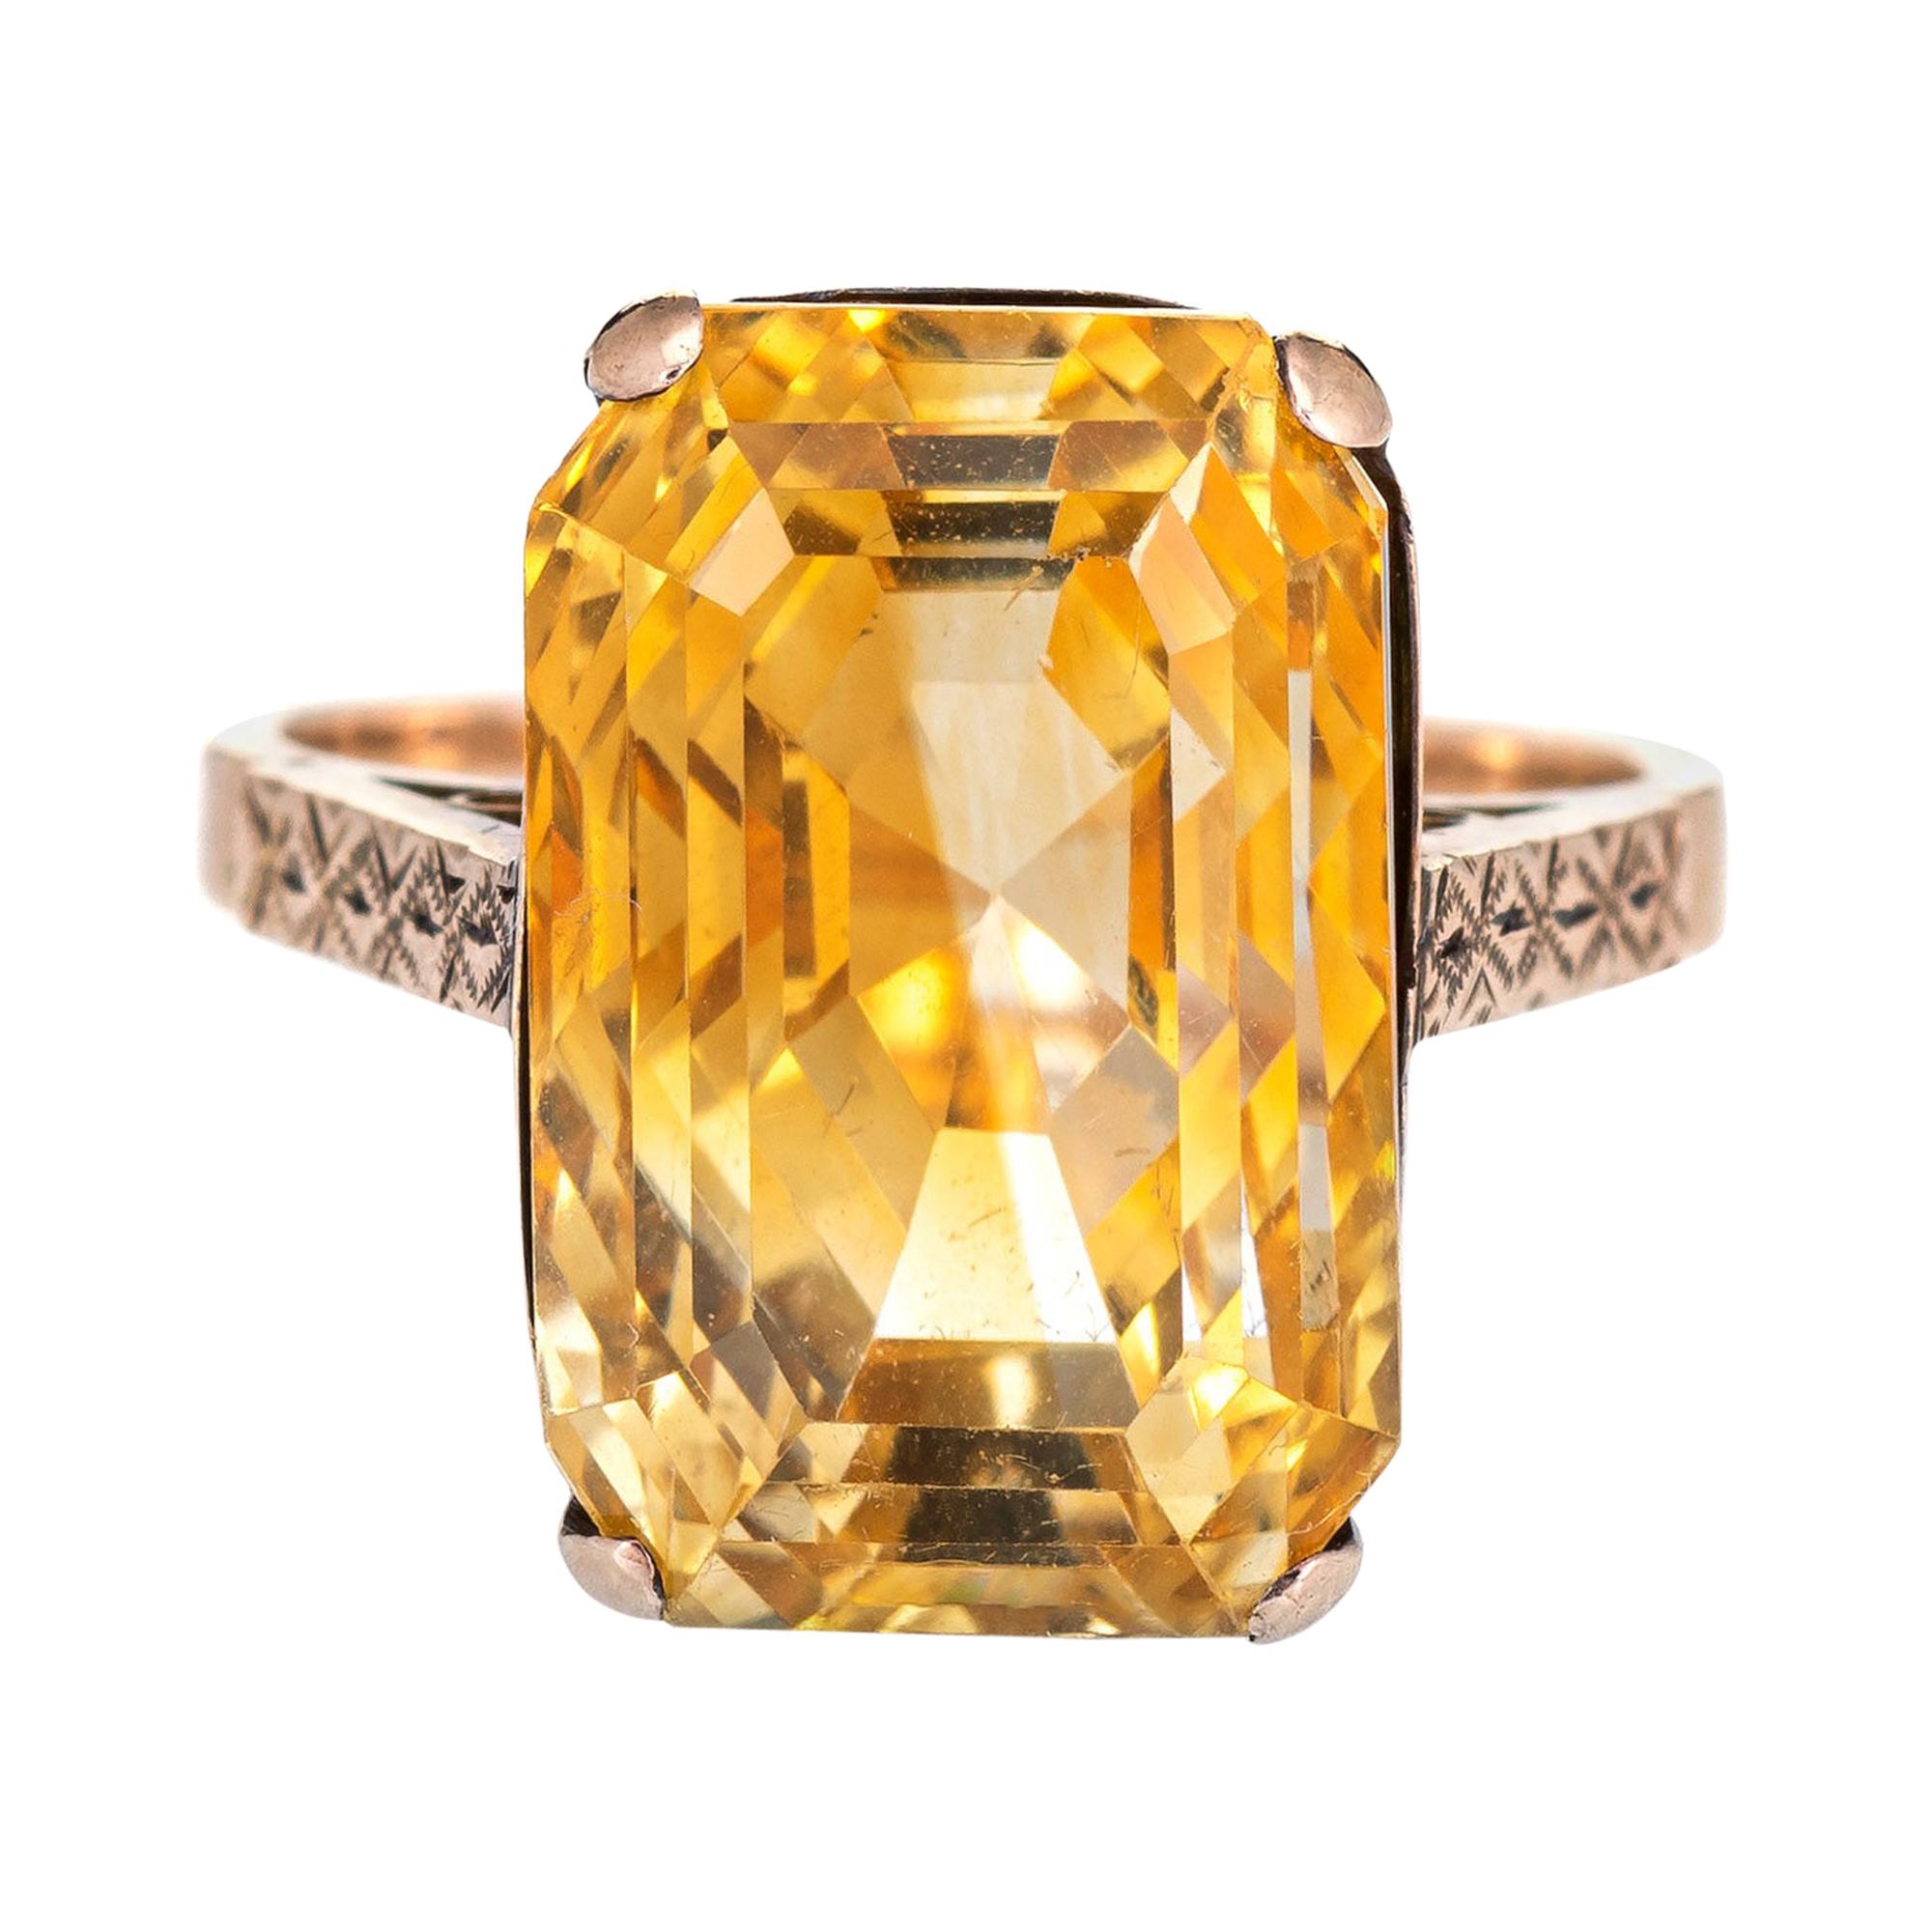 Vintage 12.25ct Golden Citrine Ring 9k Rose Gold Estate Fine Jewelry